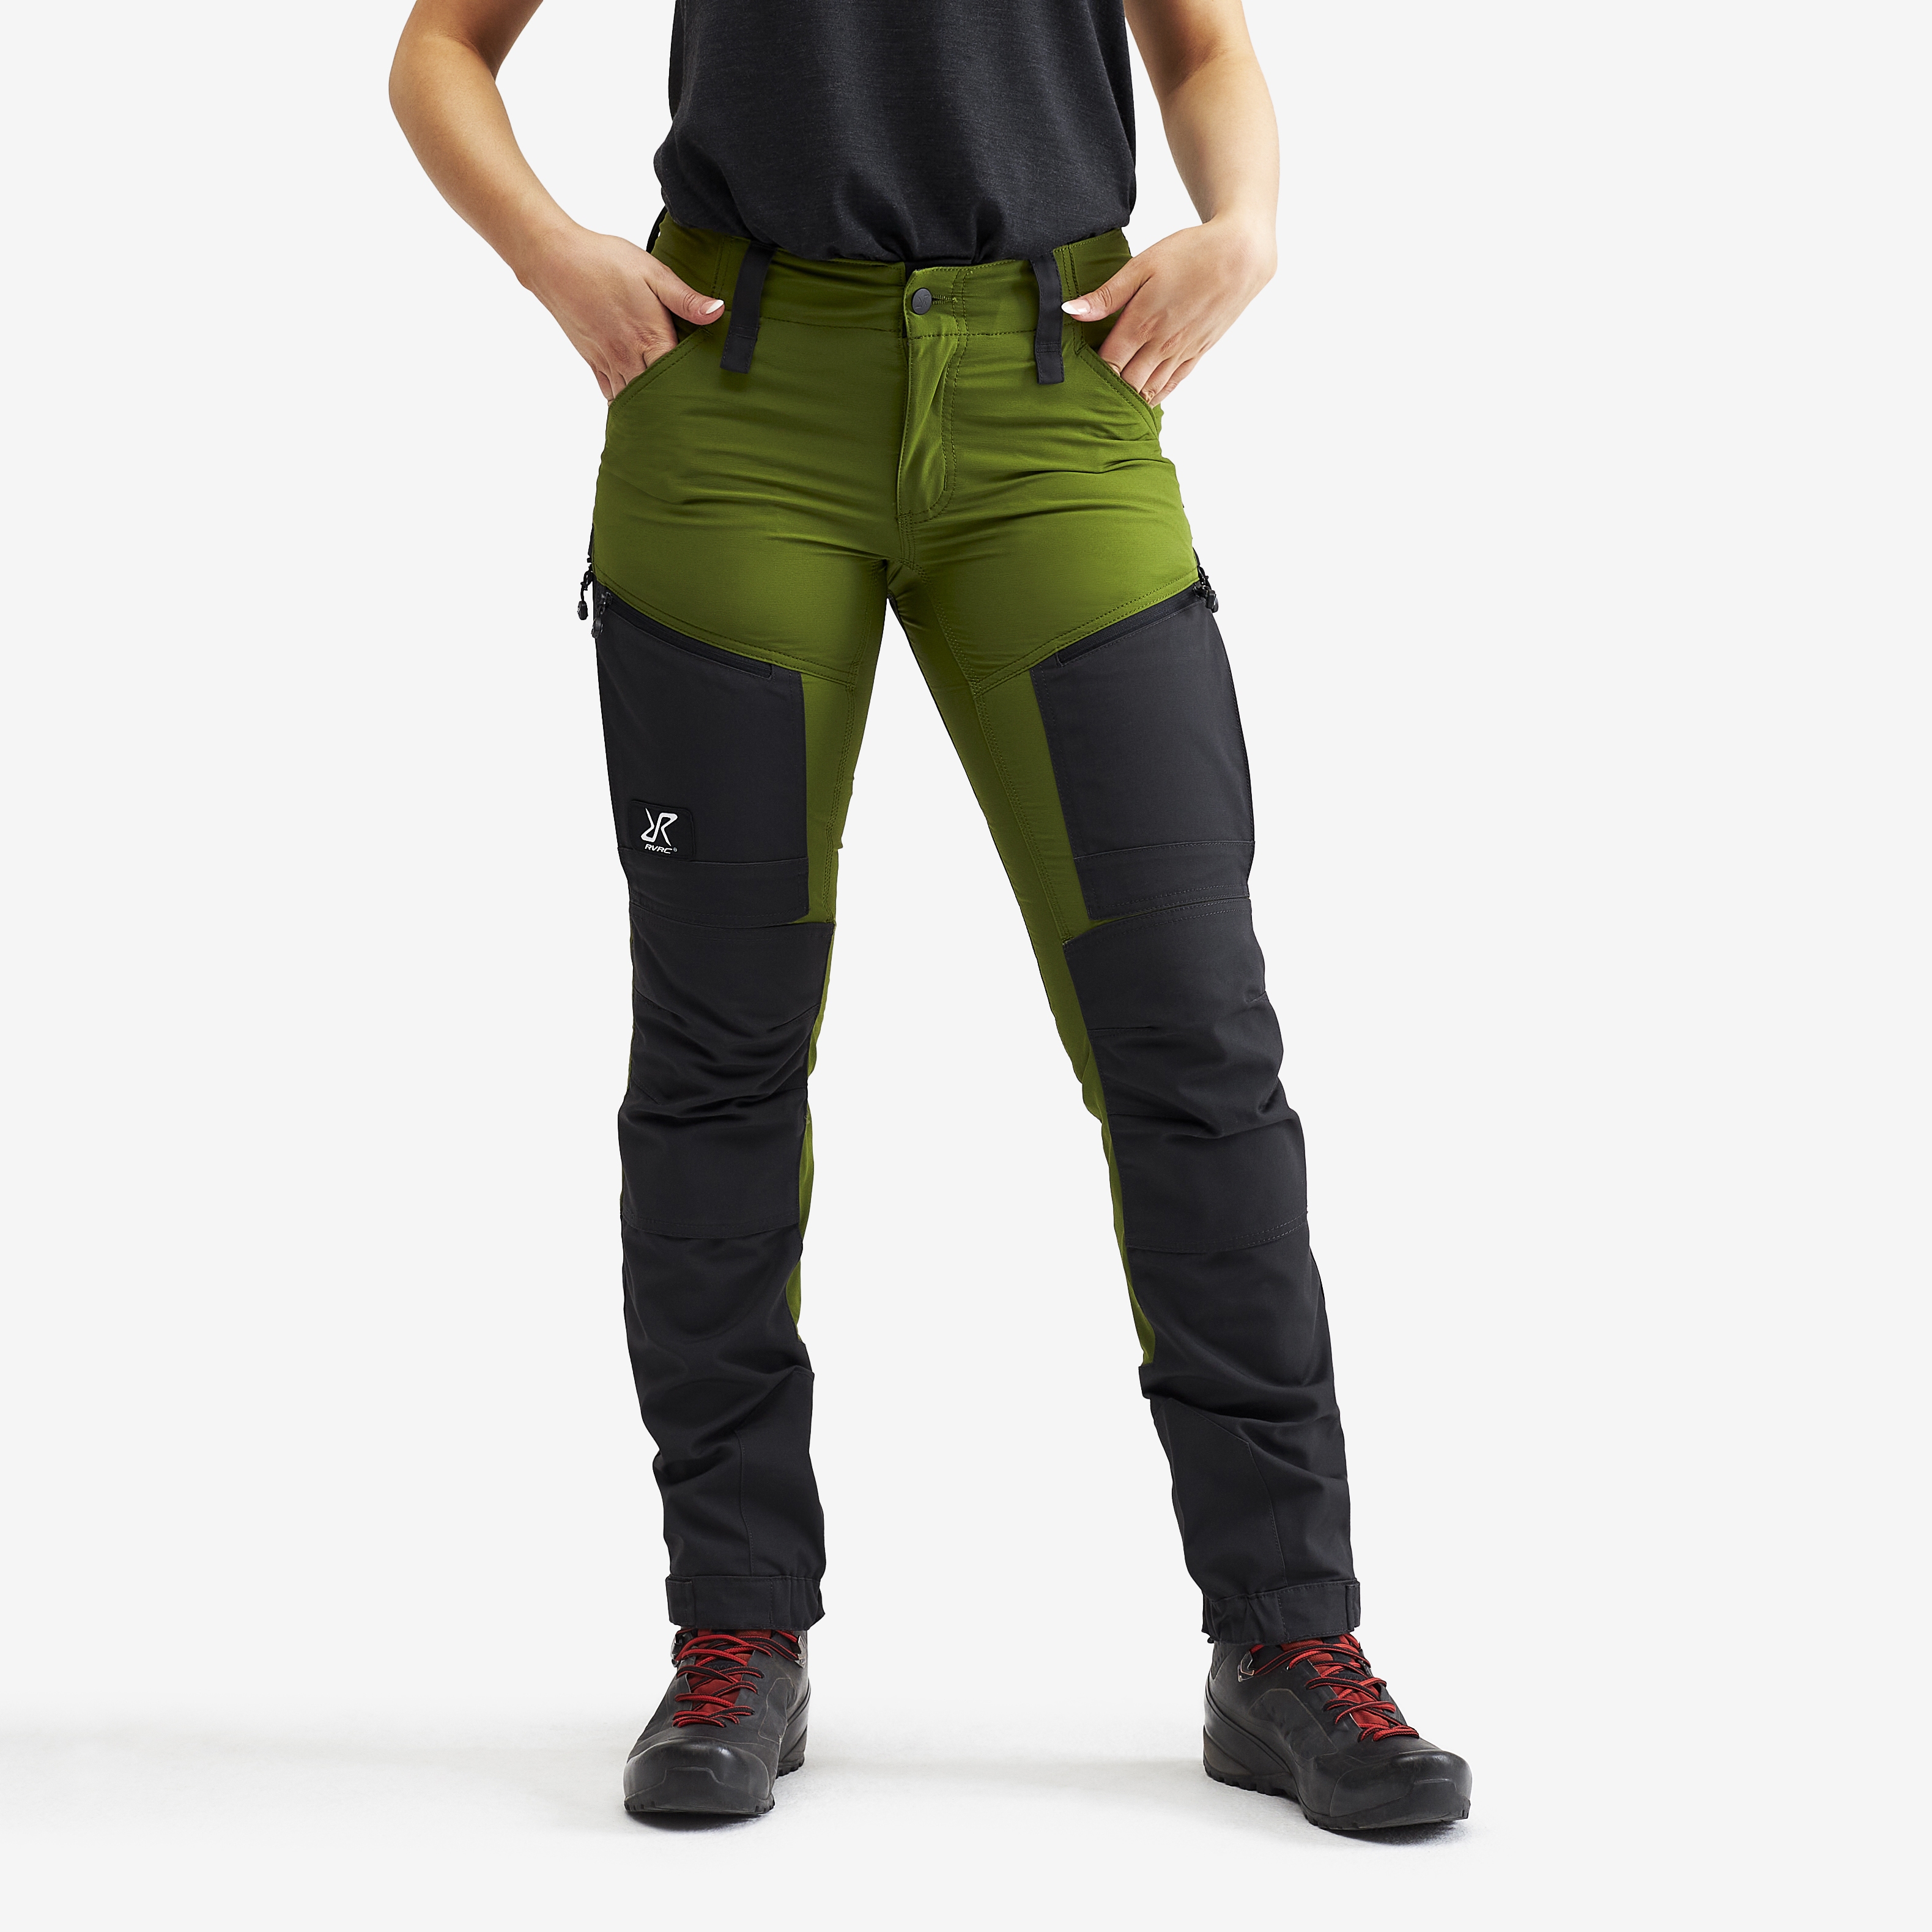 RVRC GP Pro turistické kalhoty pro ženy v zelené barvě